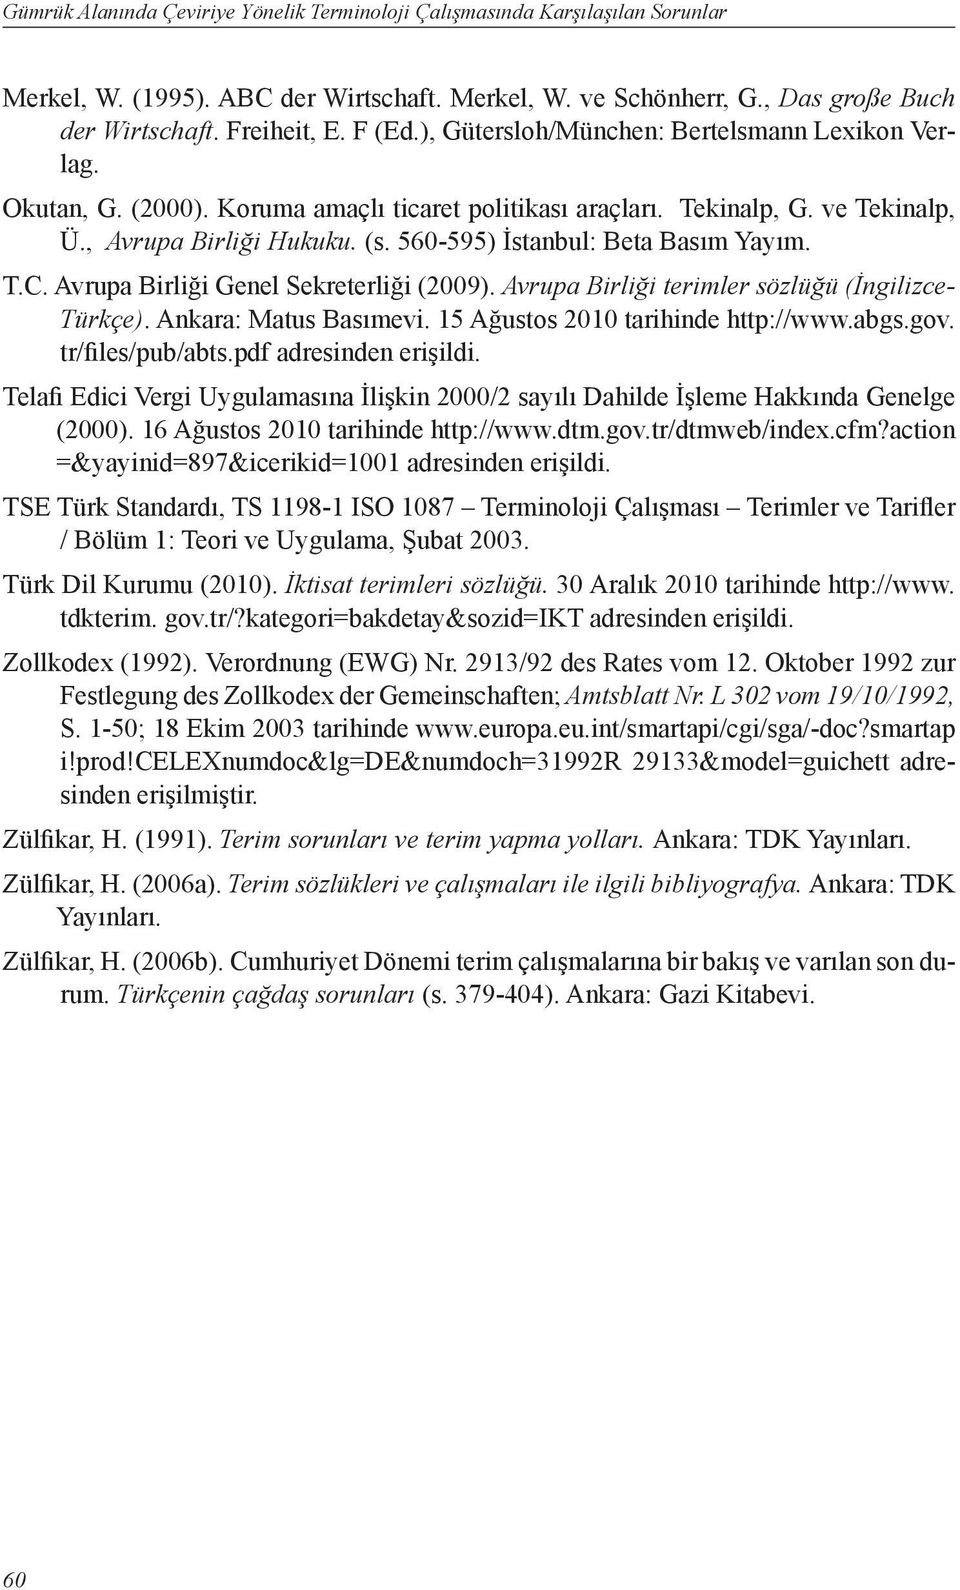 560-595) İstanbul: Beta Basım Yayım. T.C. Avrupa Birliği Genel Sekreterliği (2009). Avrupa Birliği terimler sözlüğü (İngilizce- Türkçe). Ankara: Matus Basımevi. 15 Ağustos 2010 tarihinde http://www.